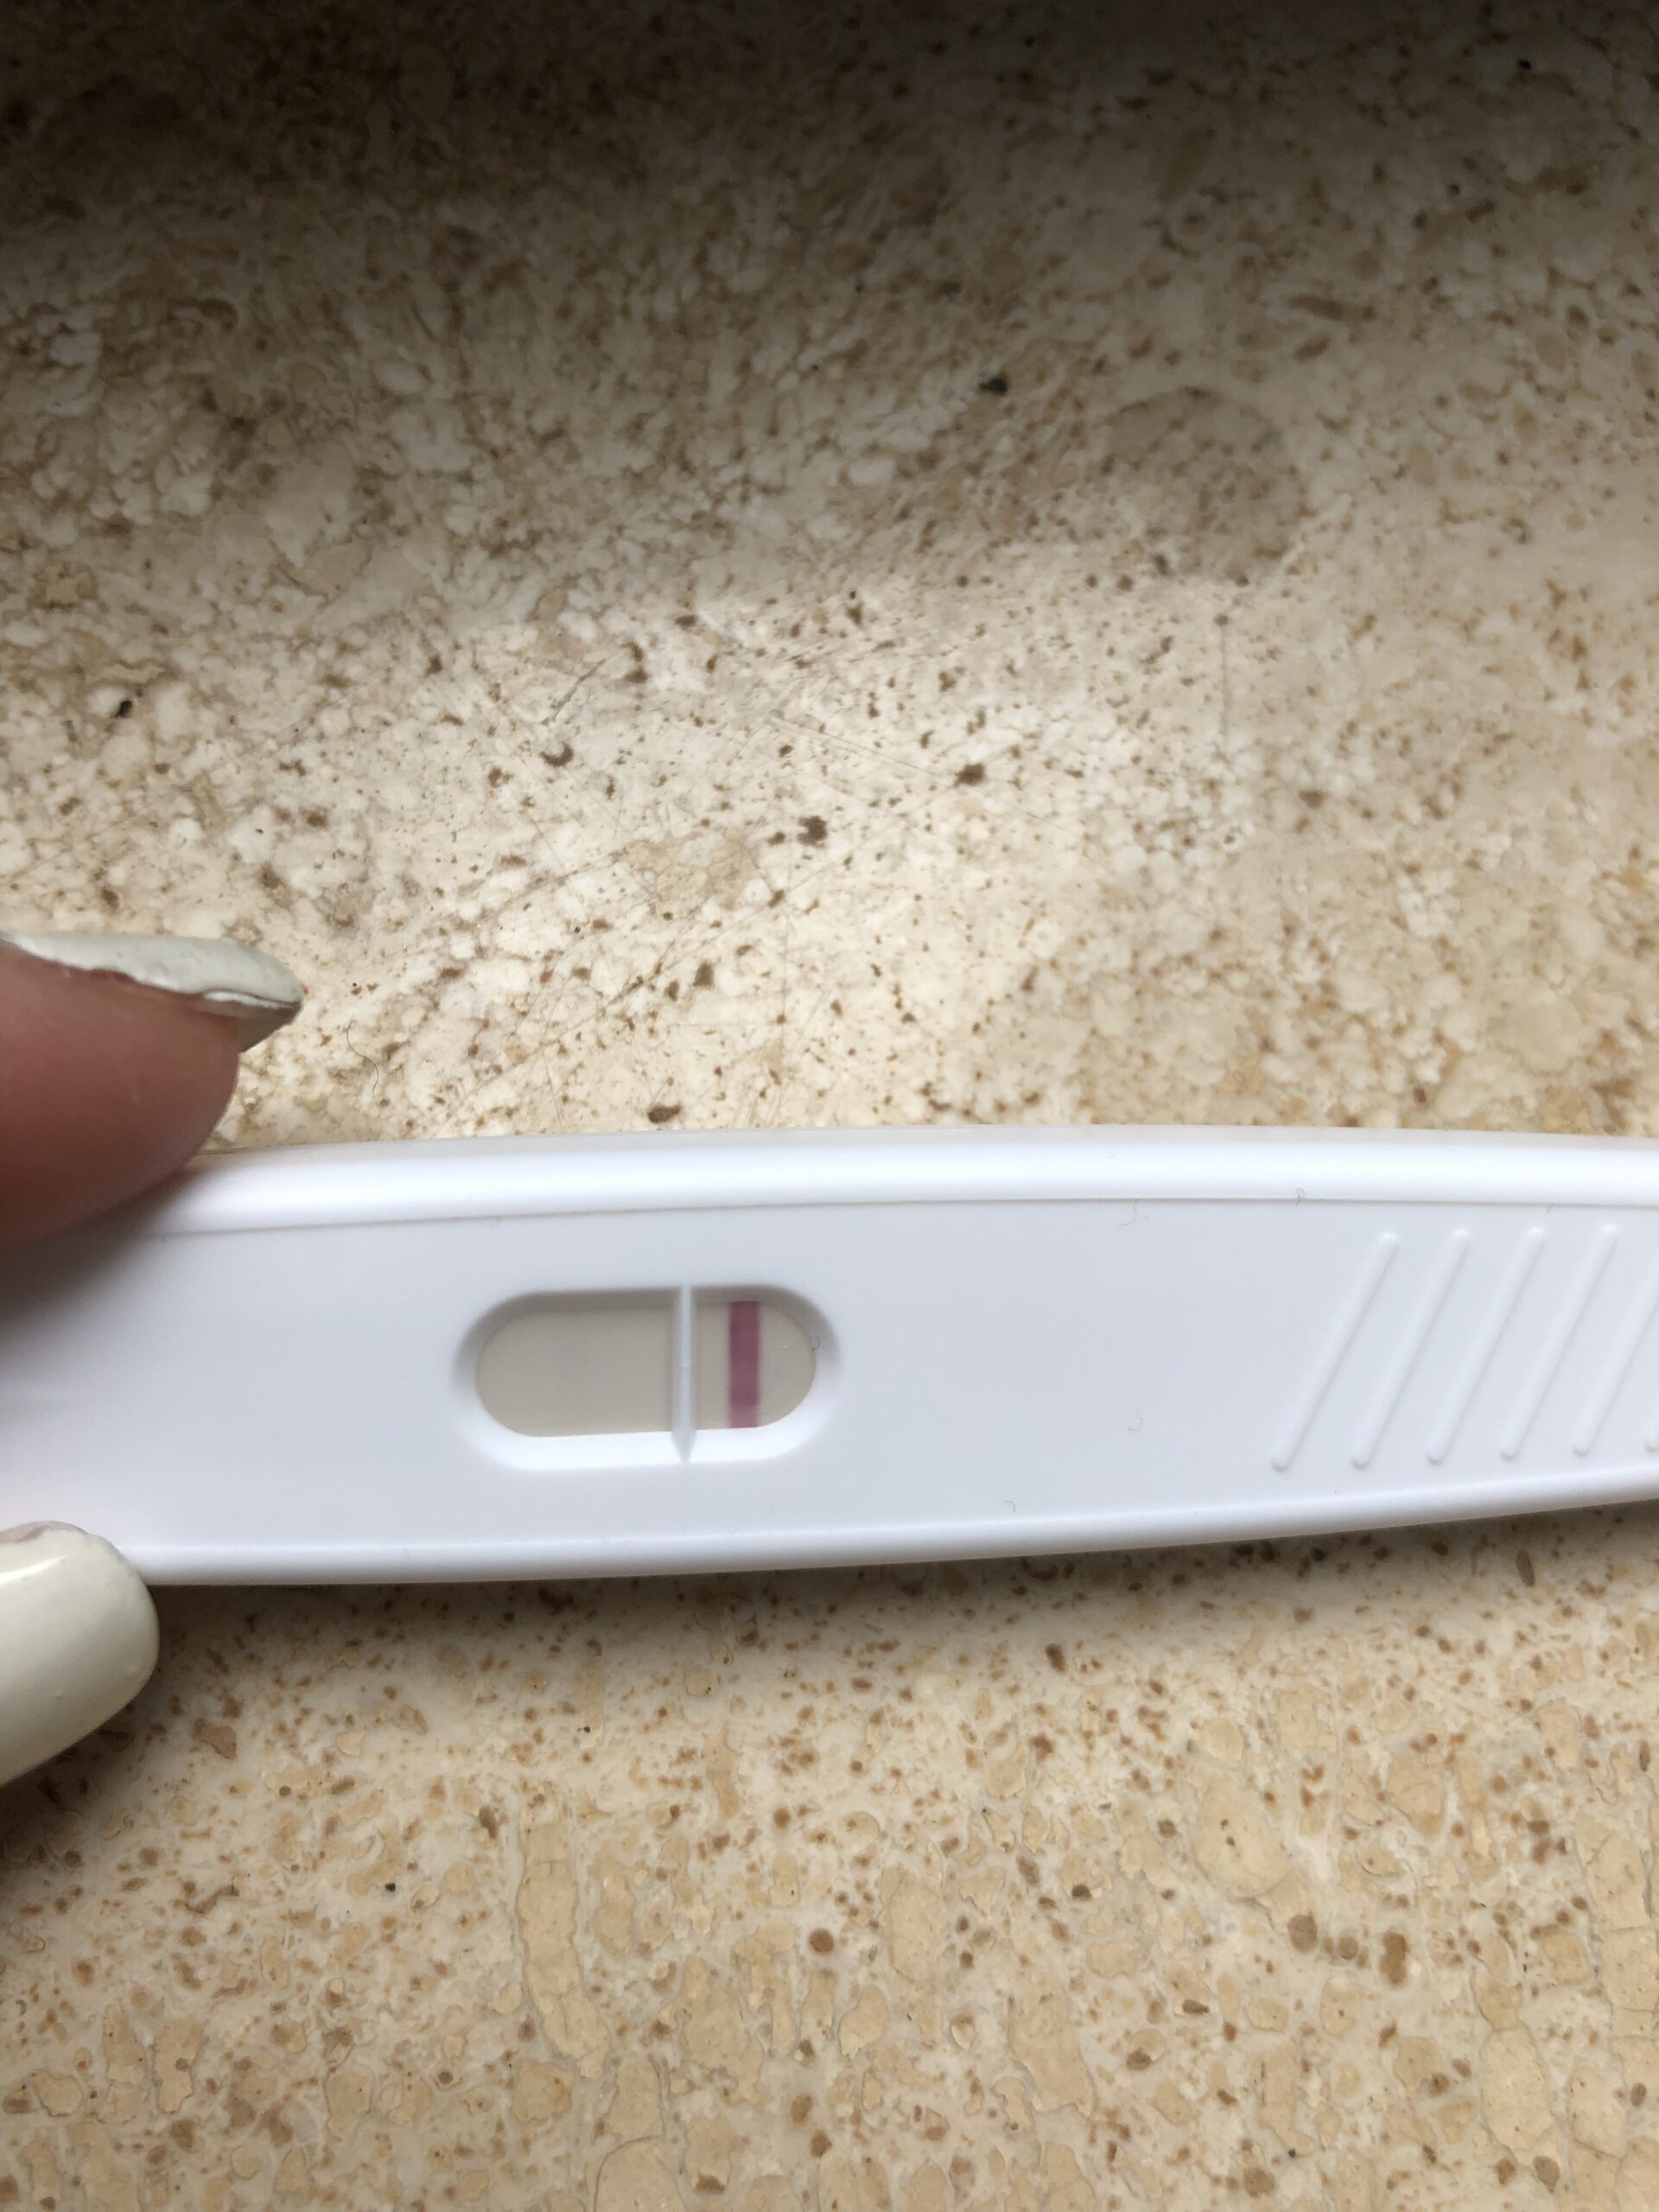 Test gravidanza con linea quasi invisibile... (discussione